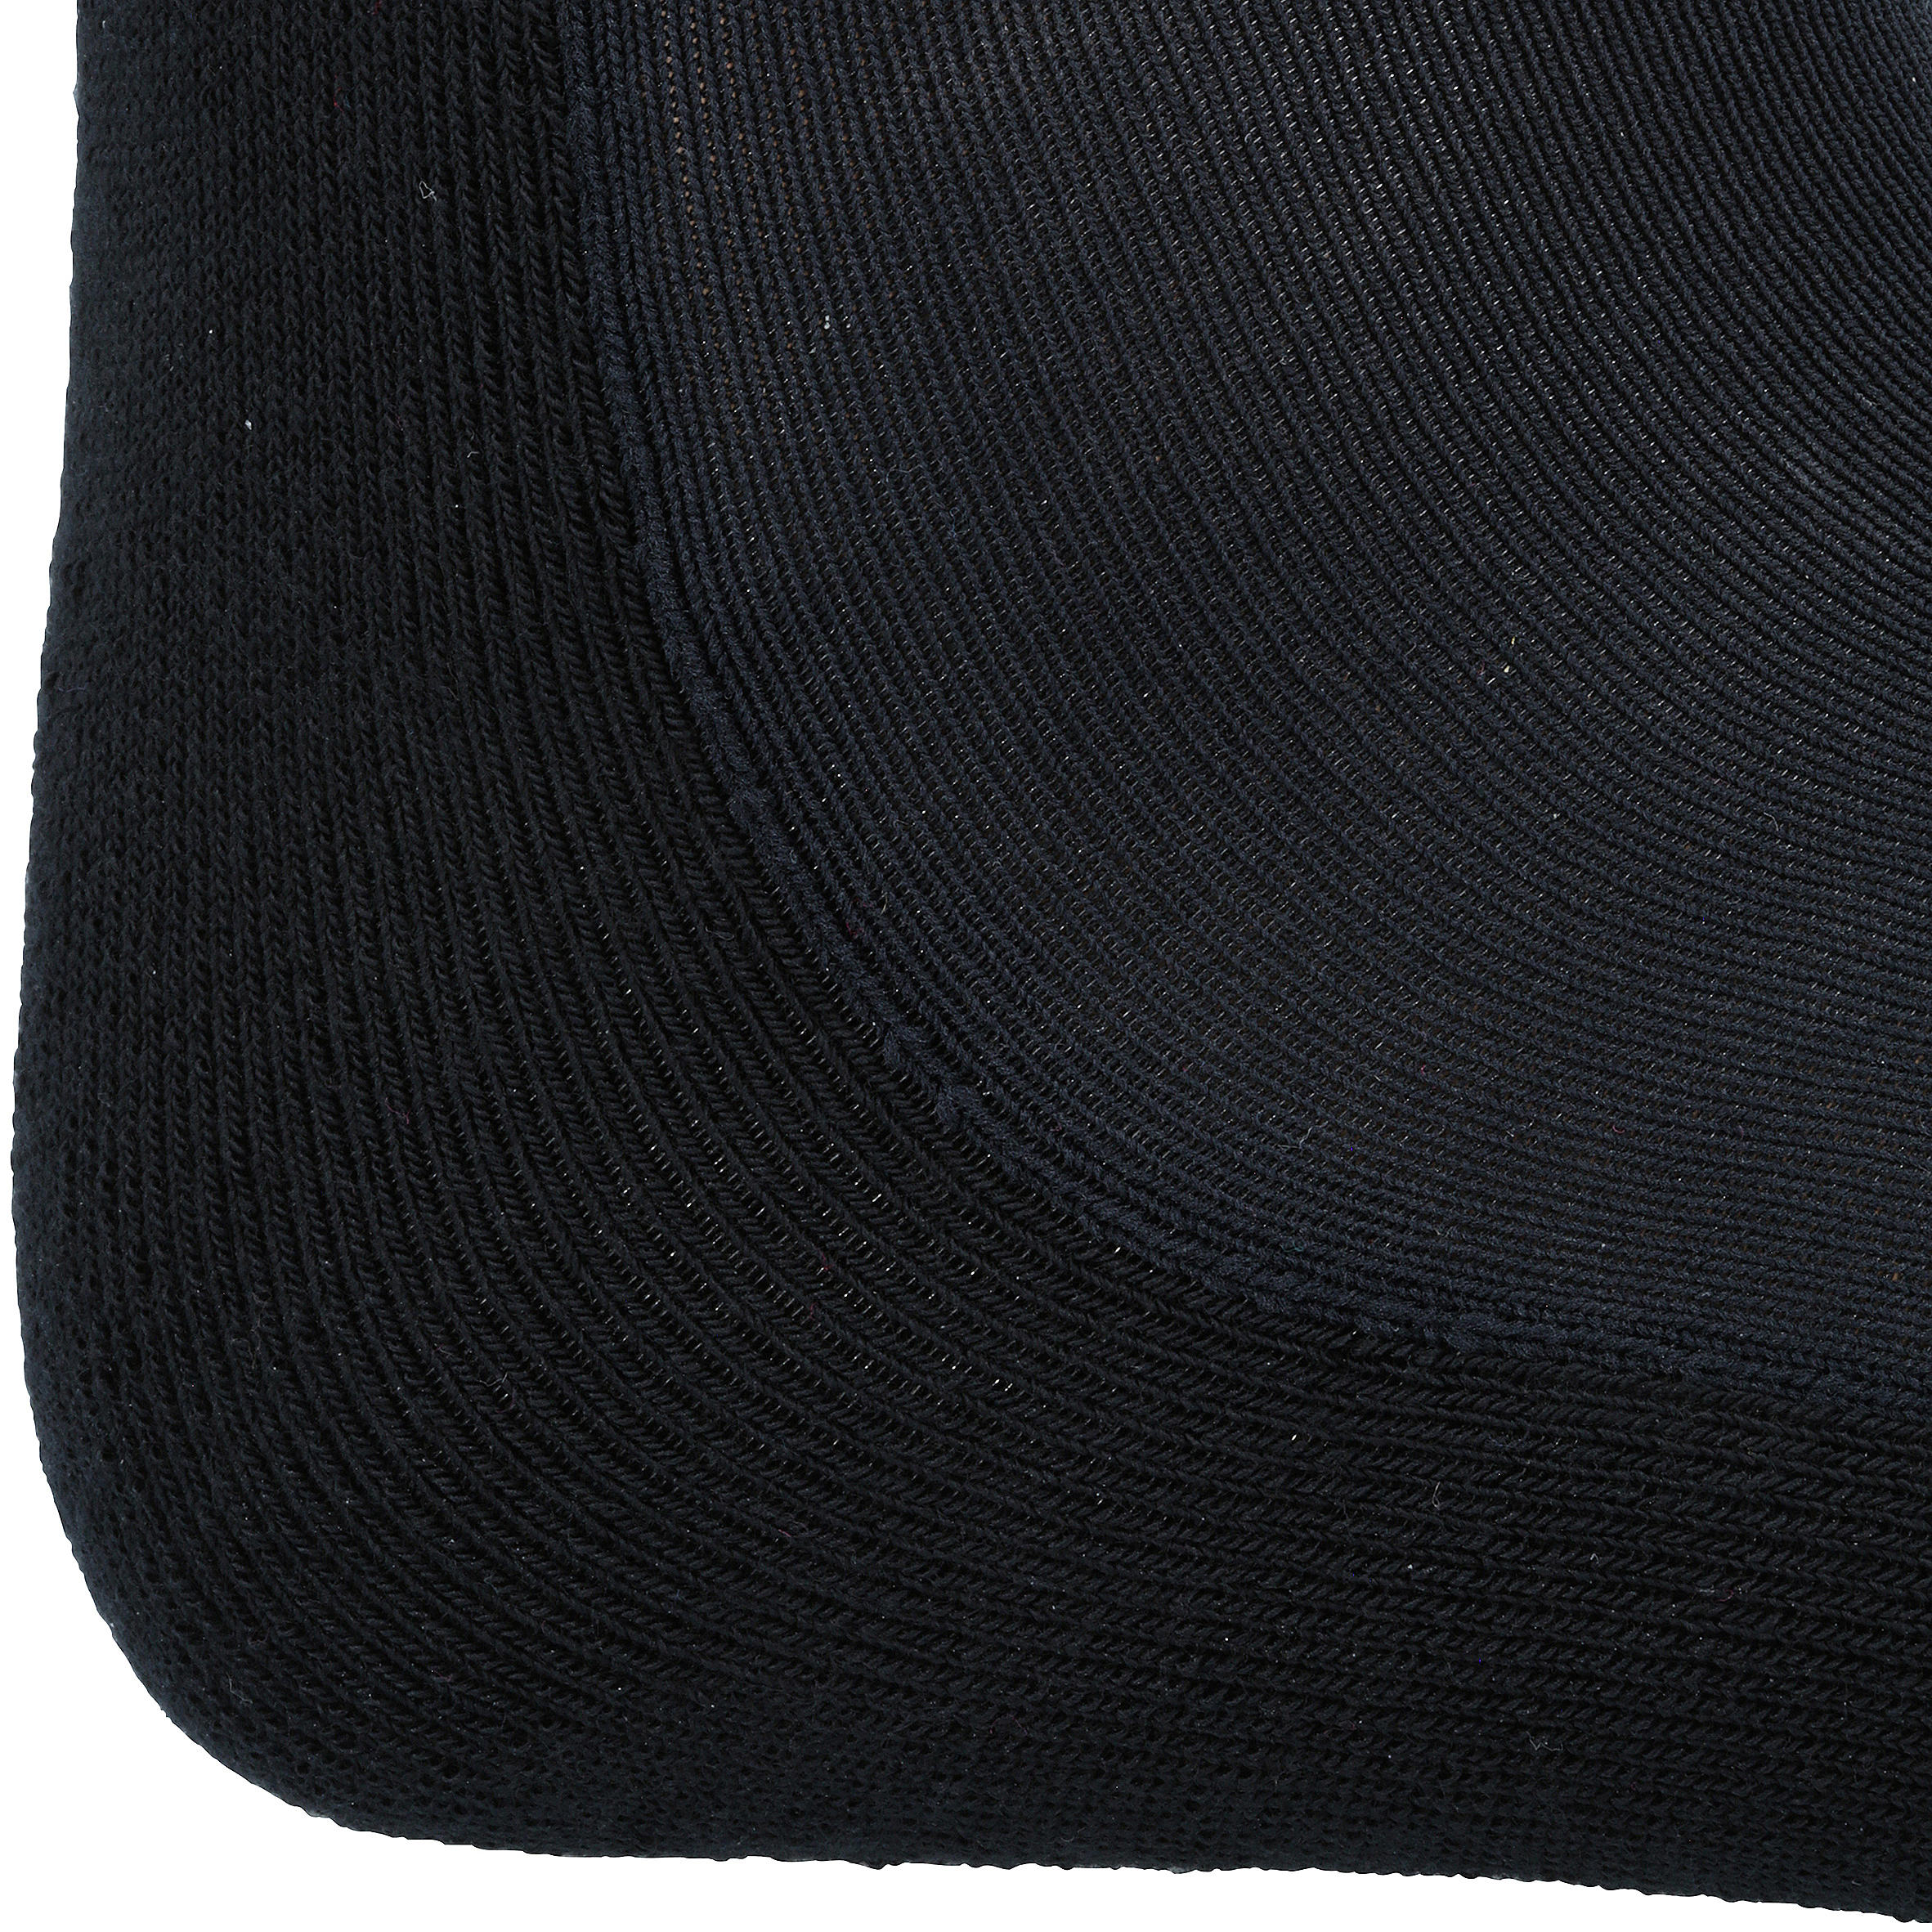 Chaussettes d'équitation - SKS 100 AD noir - FOUGANZA